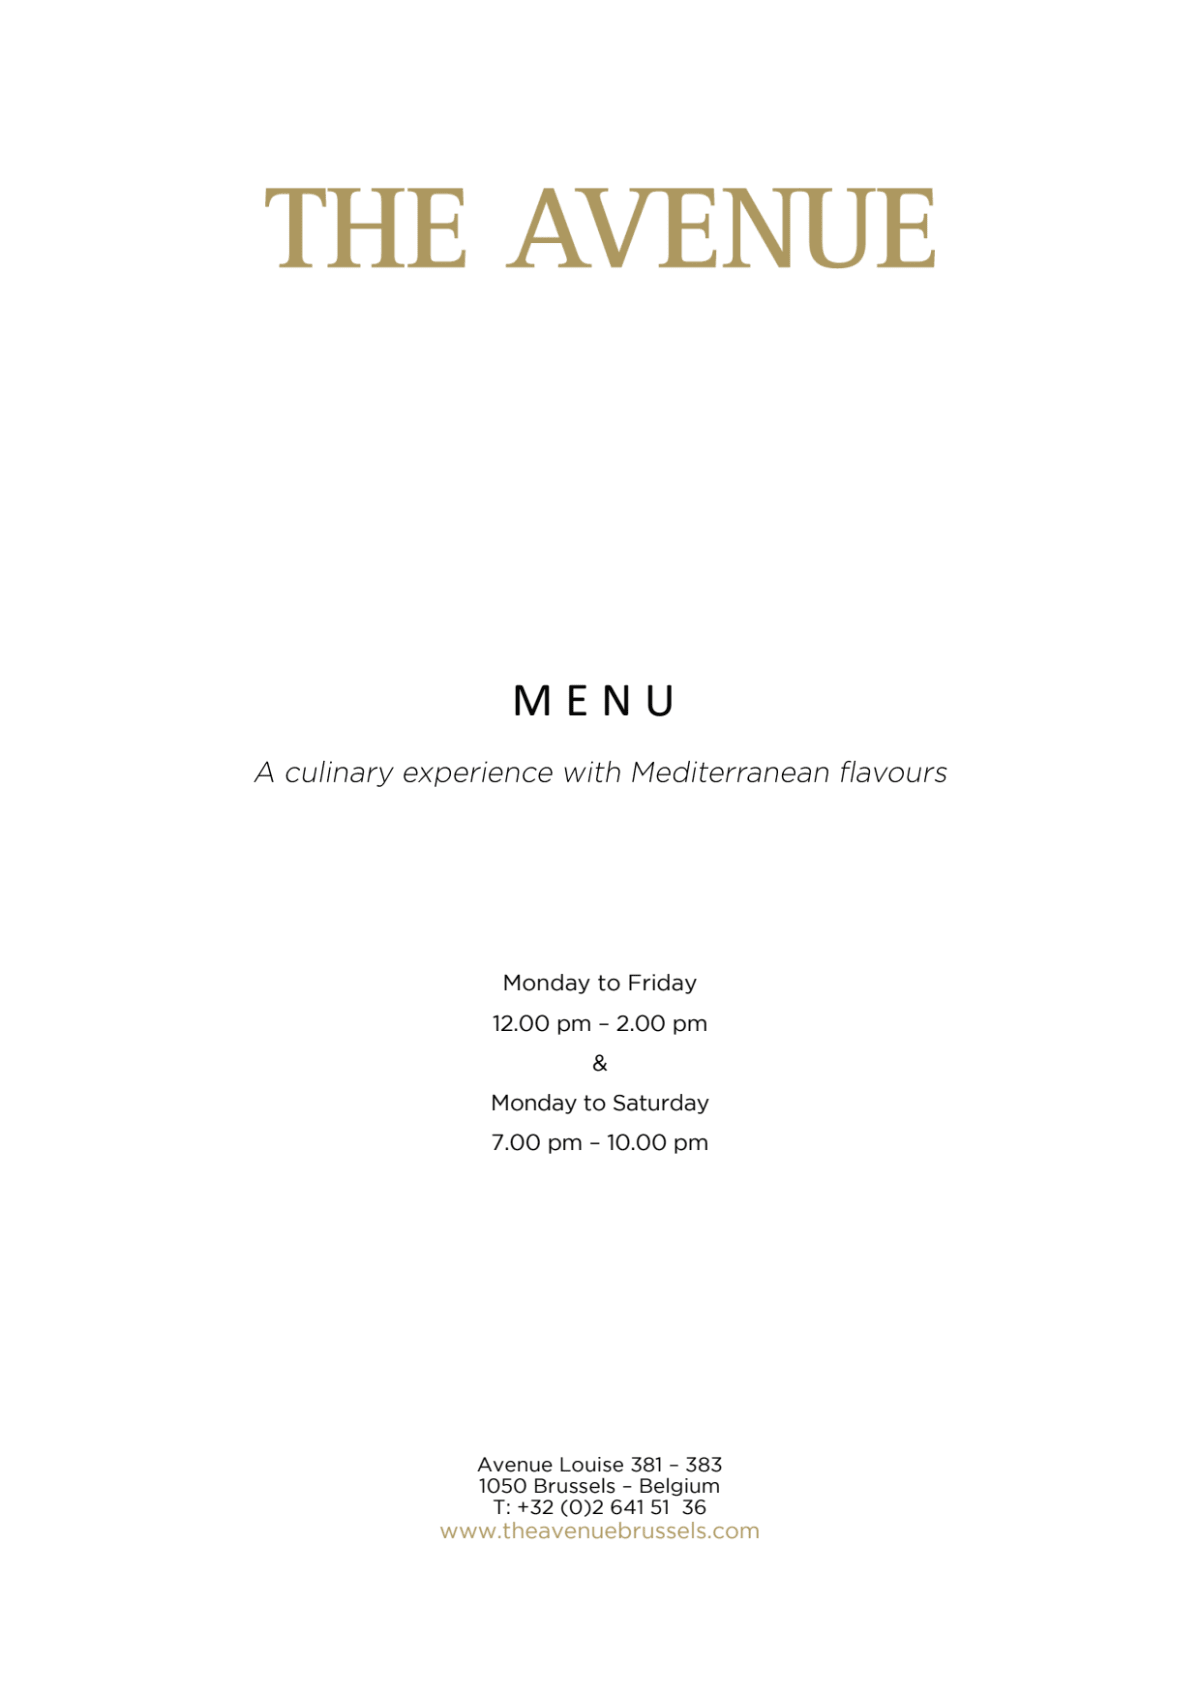 The Avenue menu